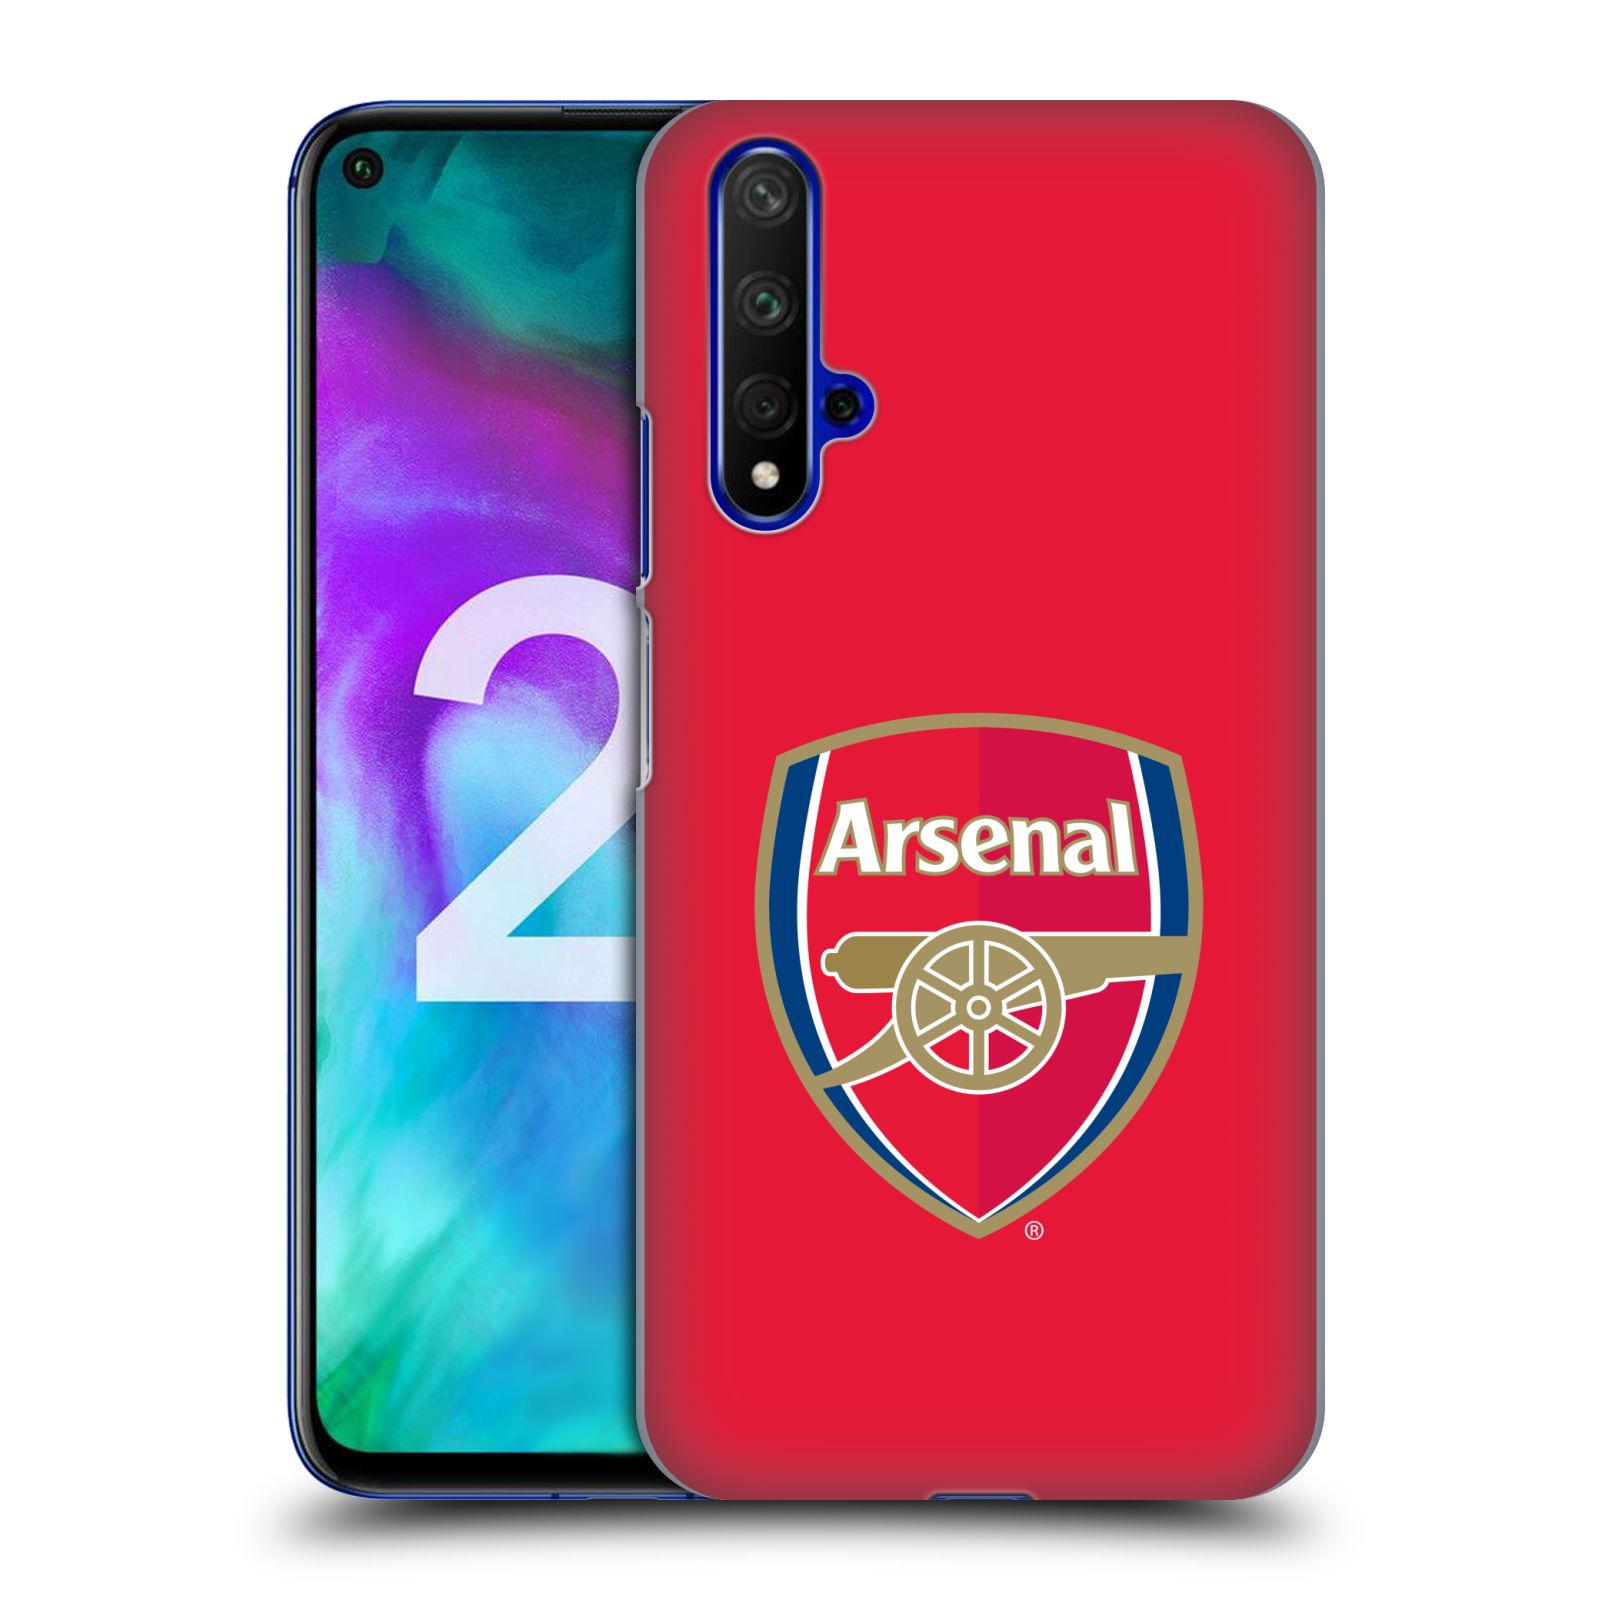 Pouzdro na mobil Honor 20 - HEAD CASE - Fotbalový klub Arsenal znak barevný červené pozadí